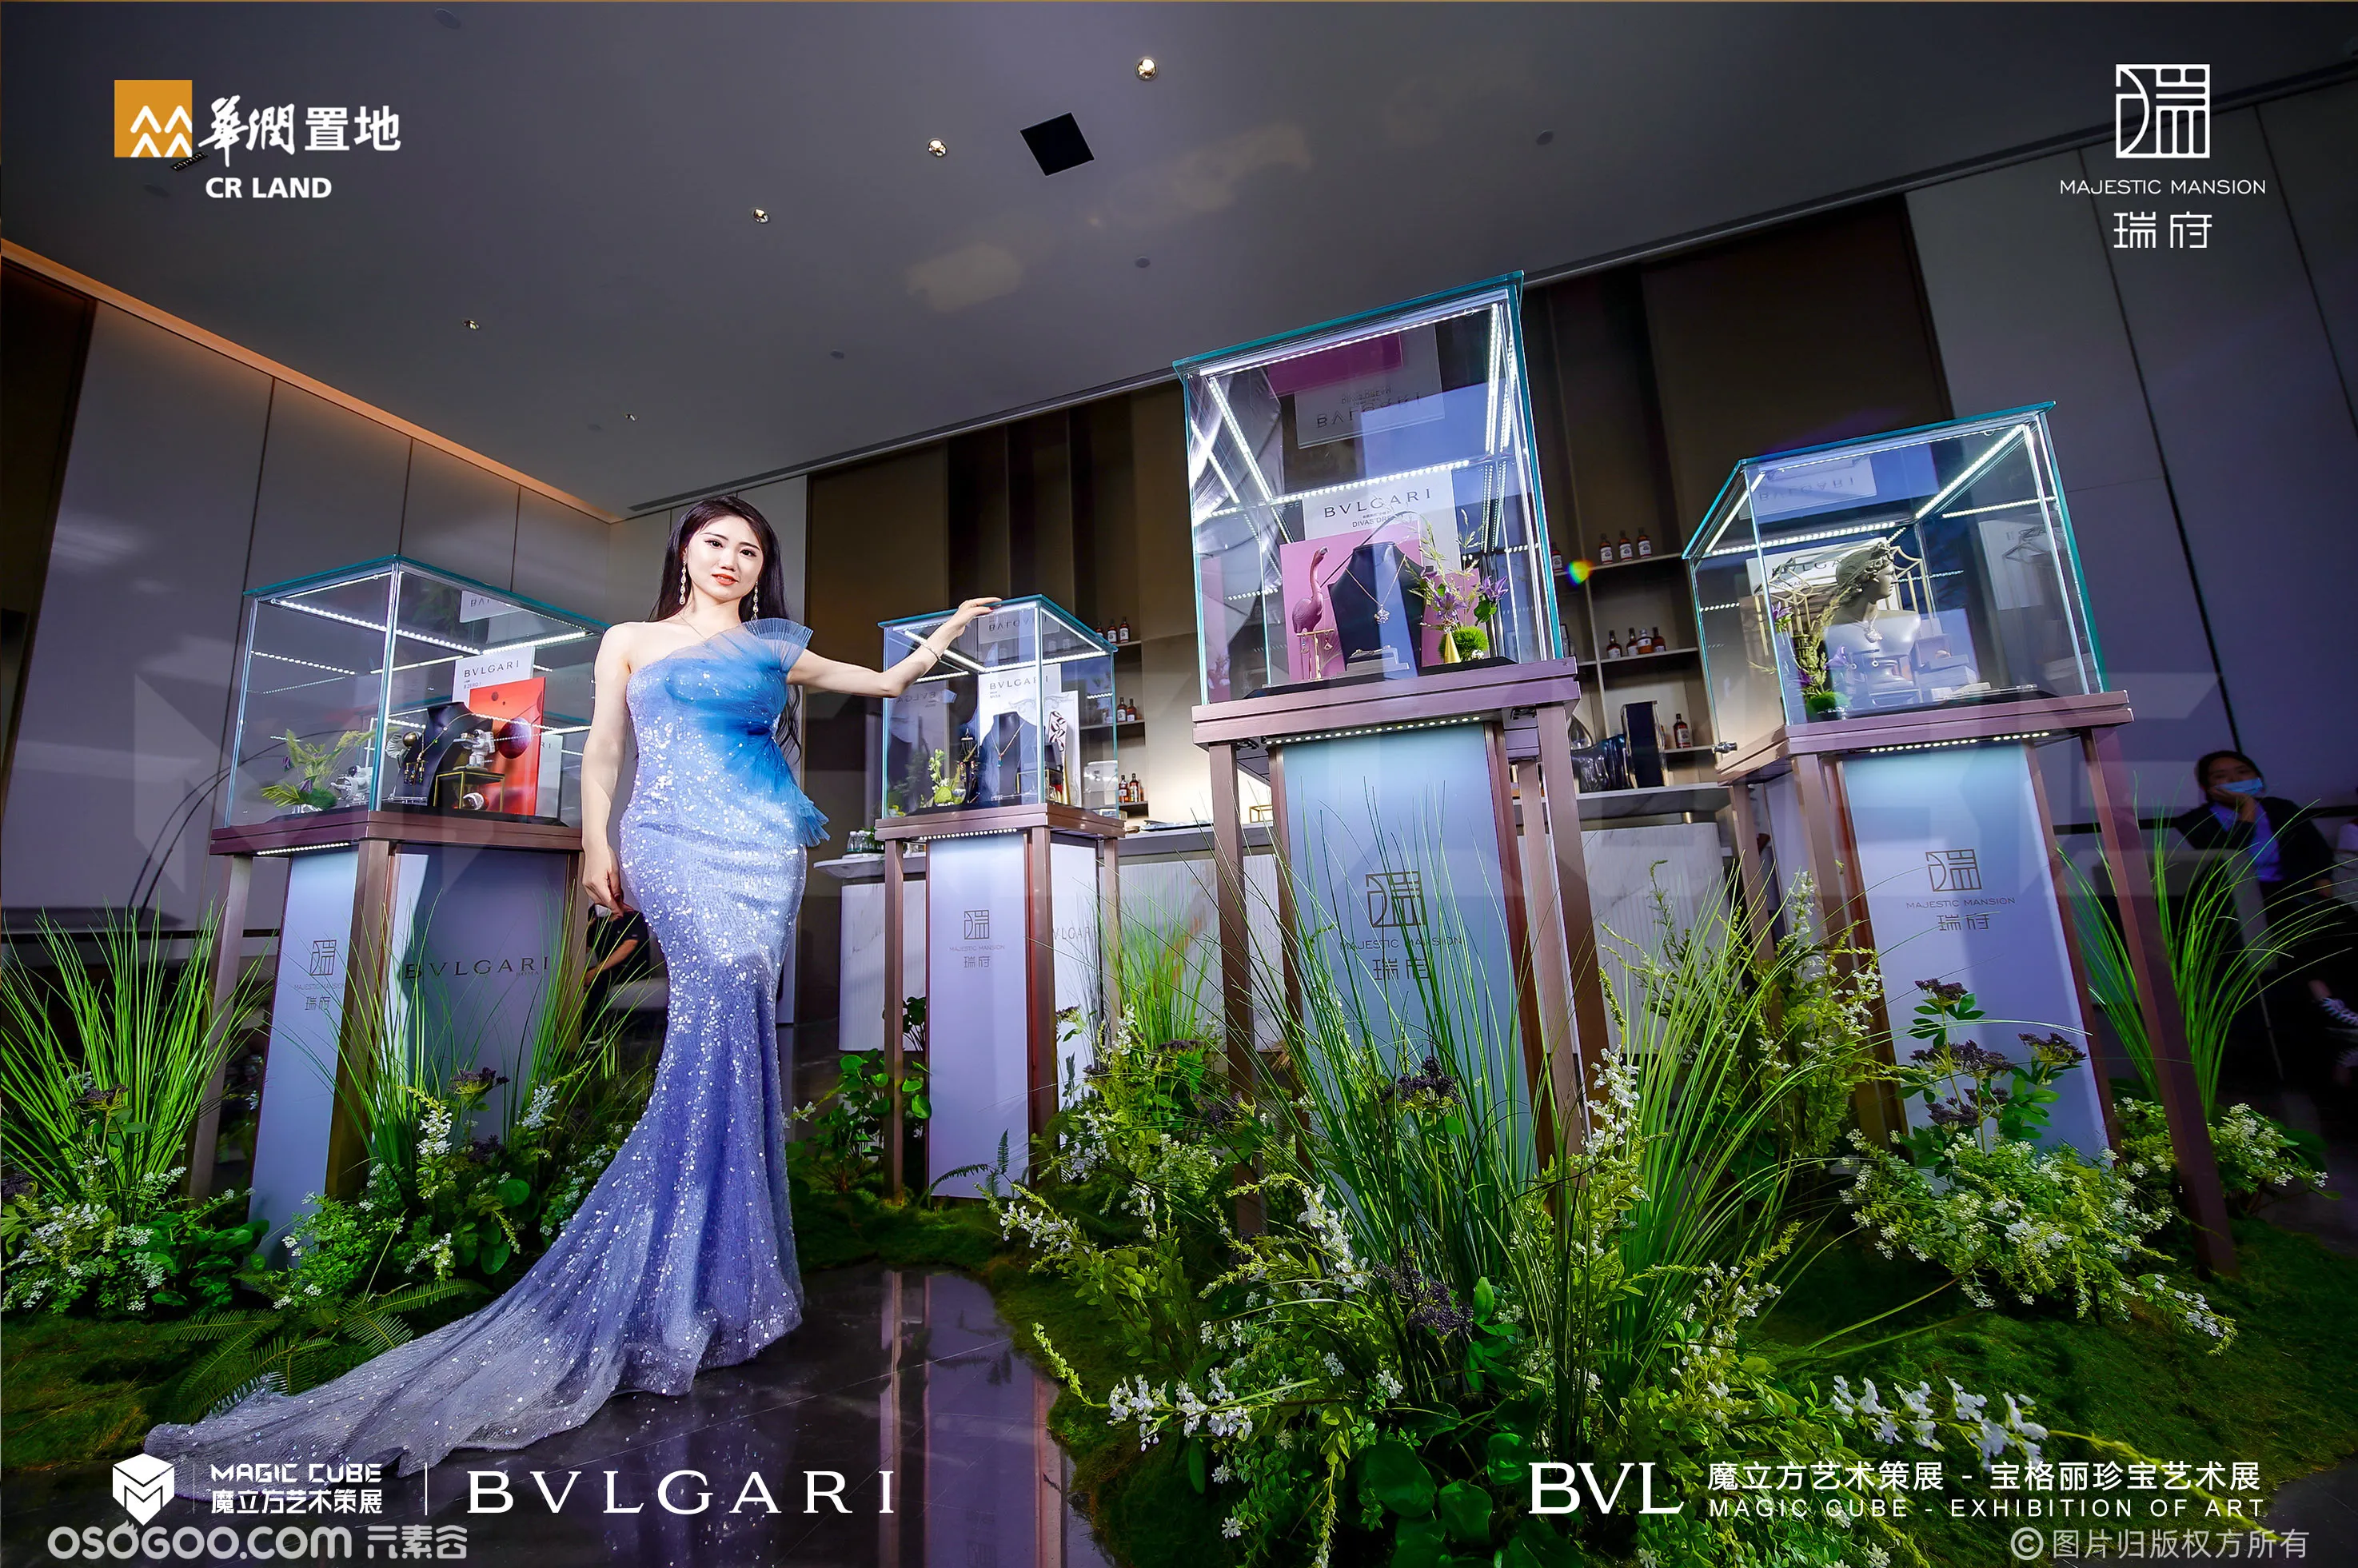 BVLGARI 宝格丽珠宝艺术展  展览展示